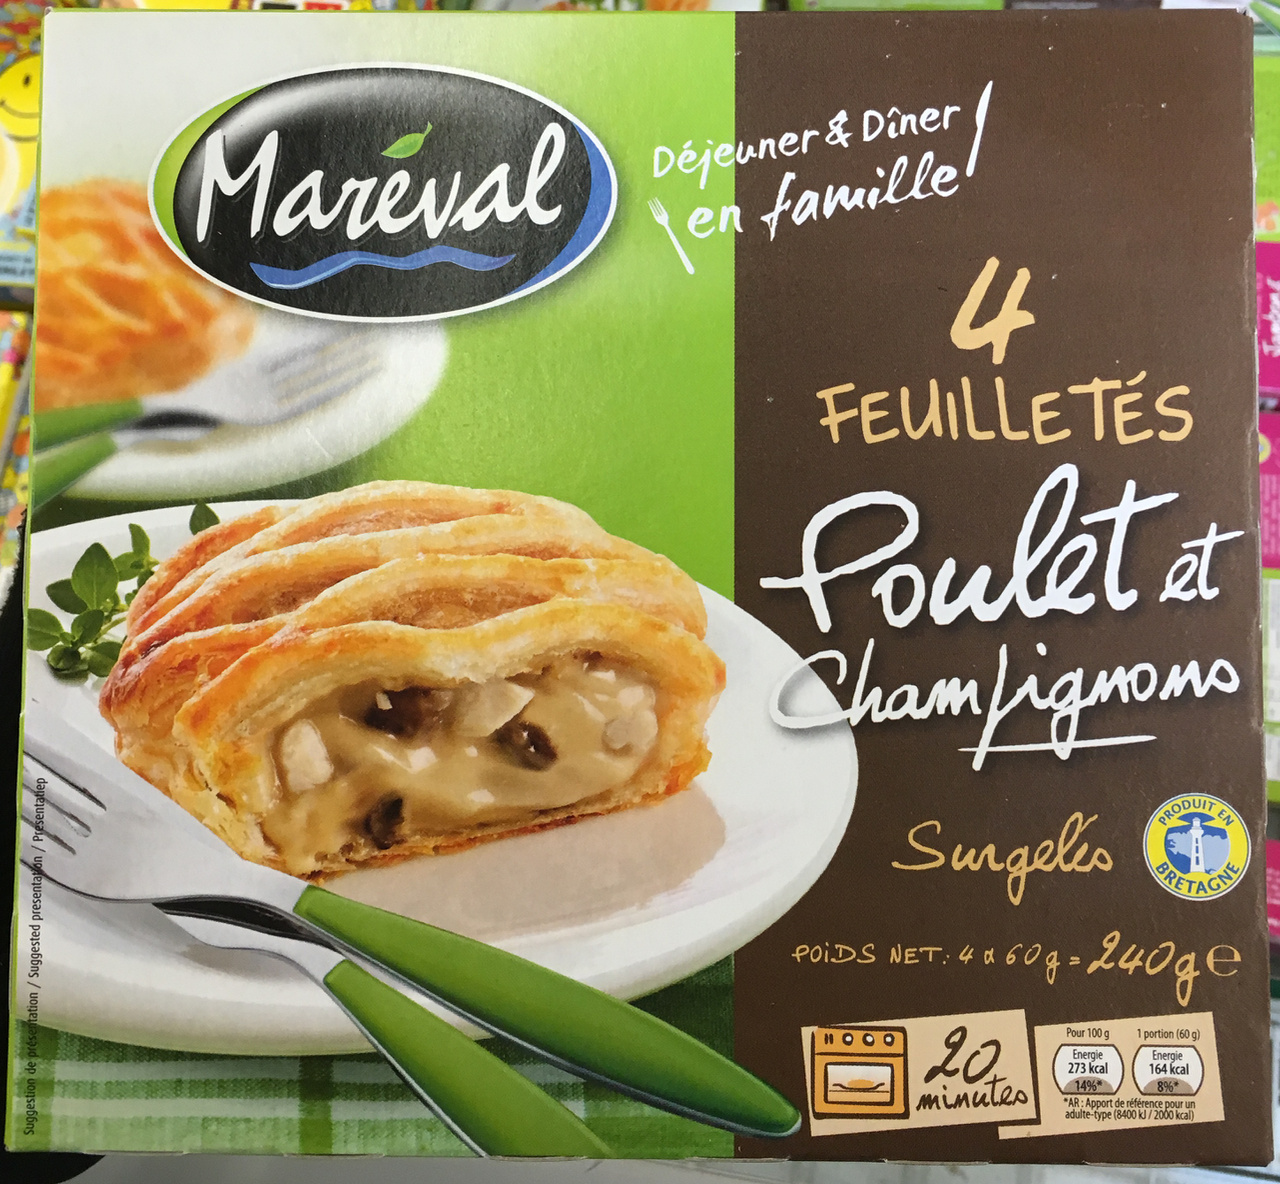 4 Feuilletés Poulet et Champignons surgelés - Produkt - fr